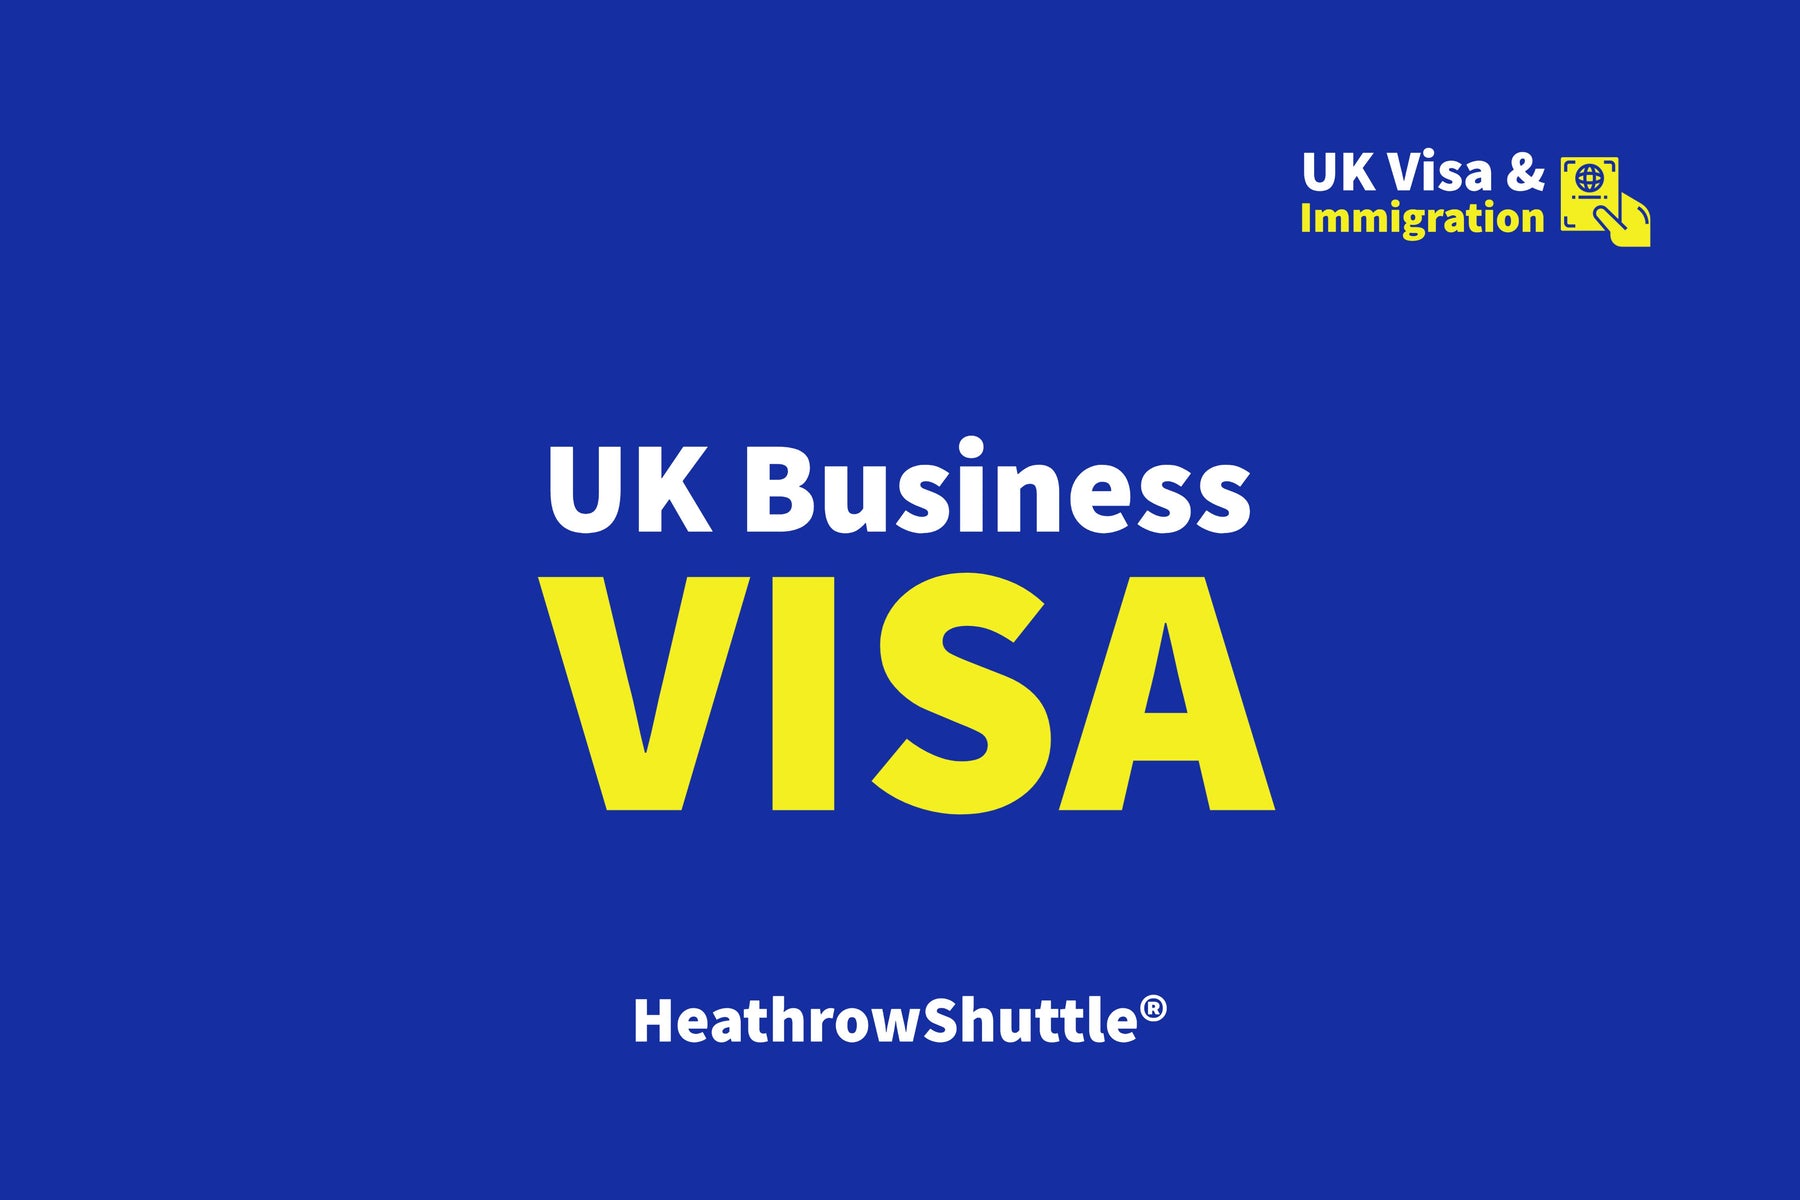 UK Business Visa Information